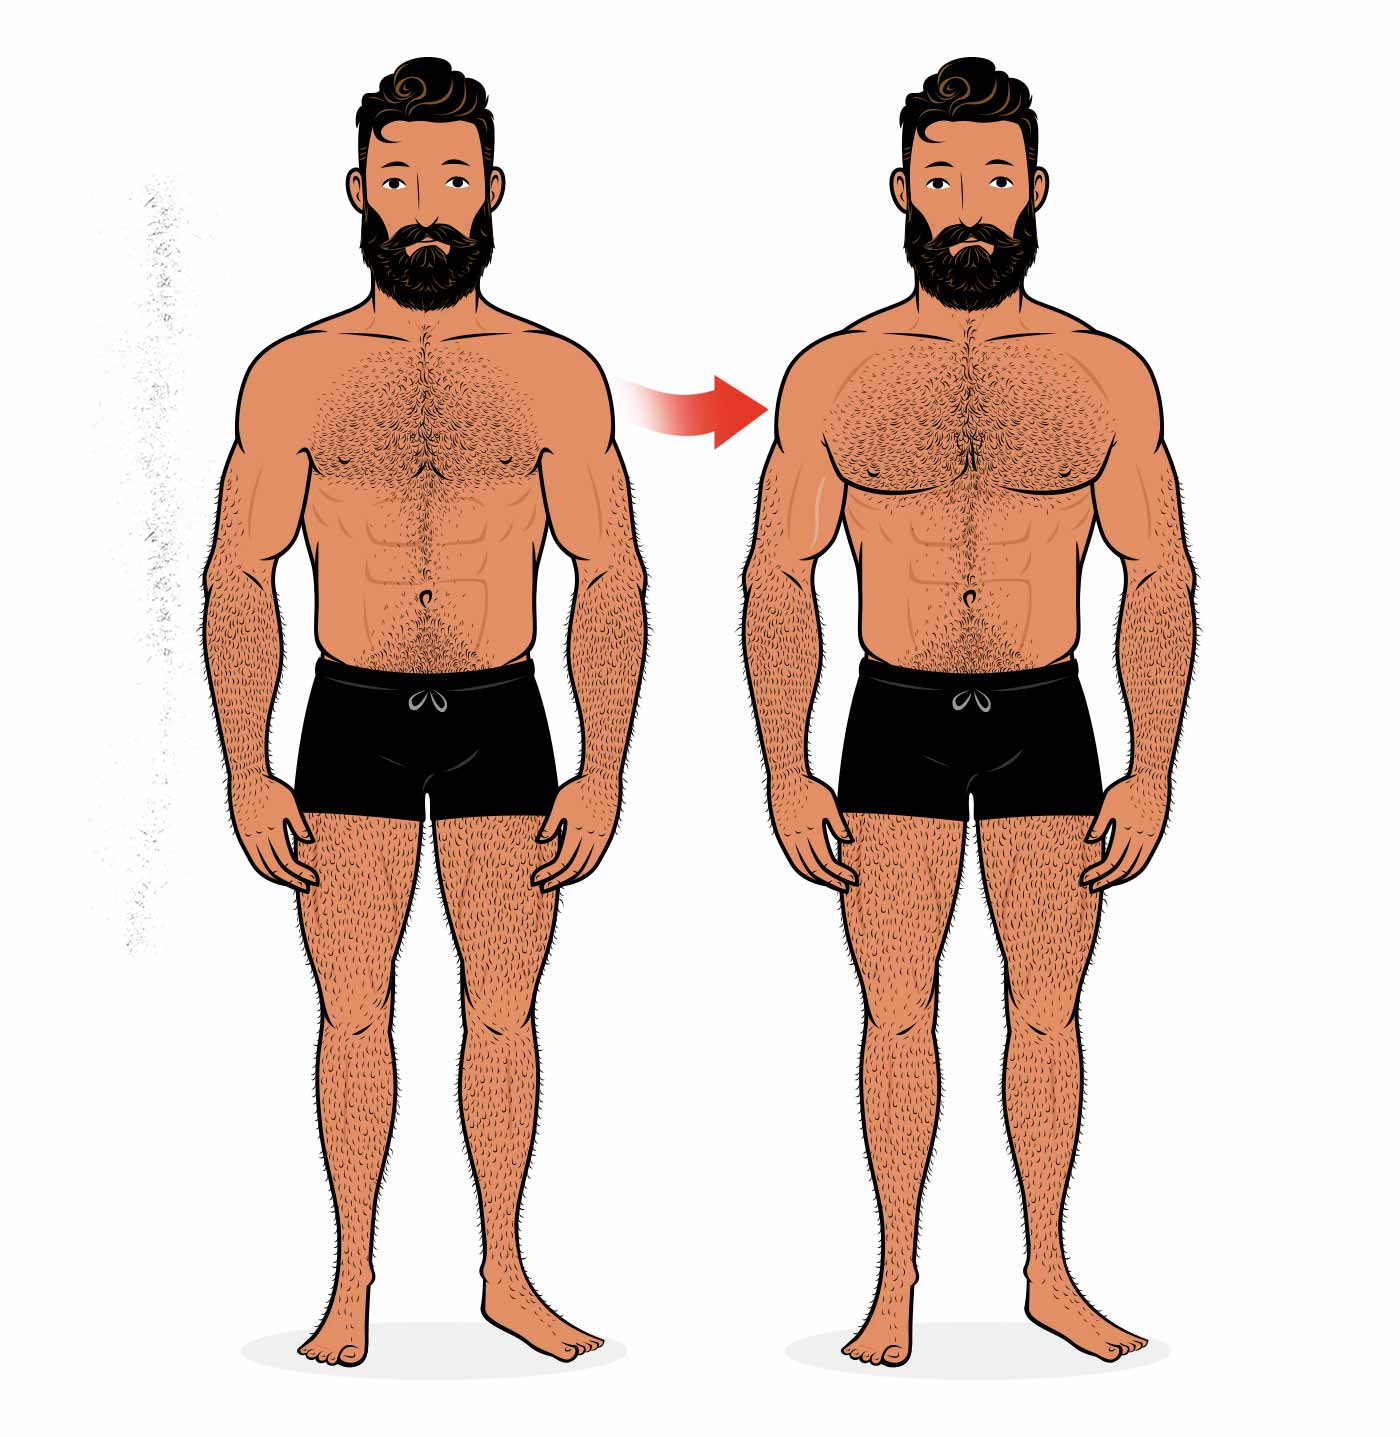 Ilustración de la transformación de un hombre al aumentar el tamaño de su pecho.